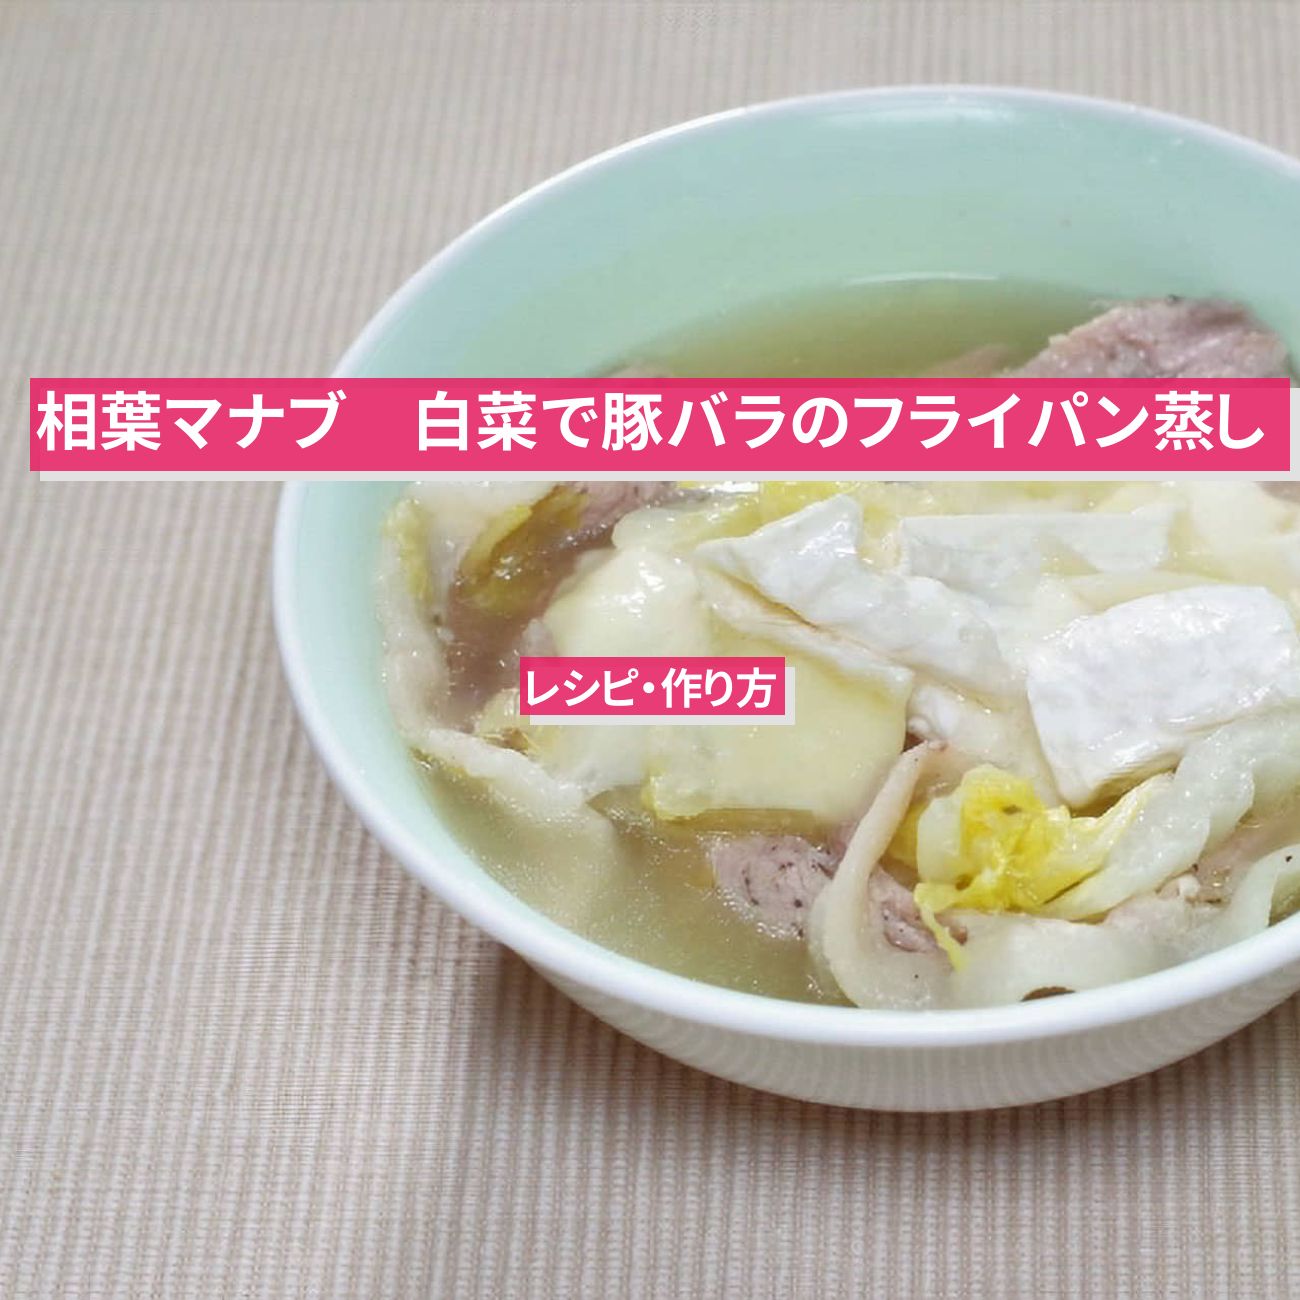 【相葉マナブ】白菜で『豚バラのフライパン蒸し』のレシピ・作り方